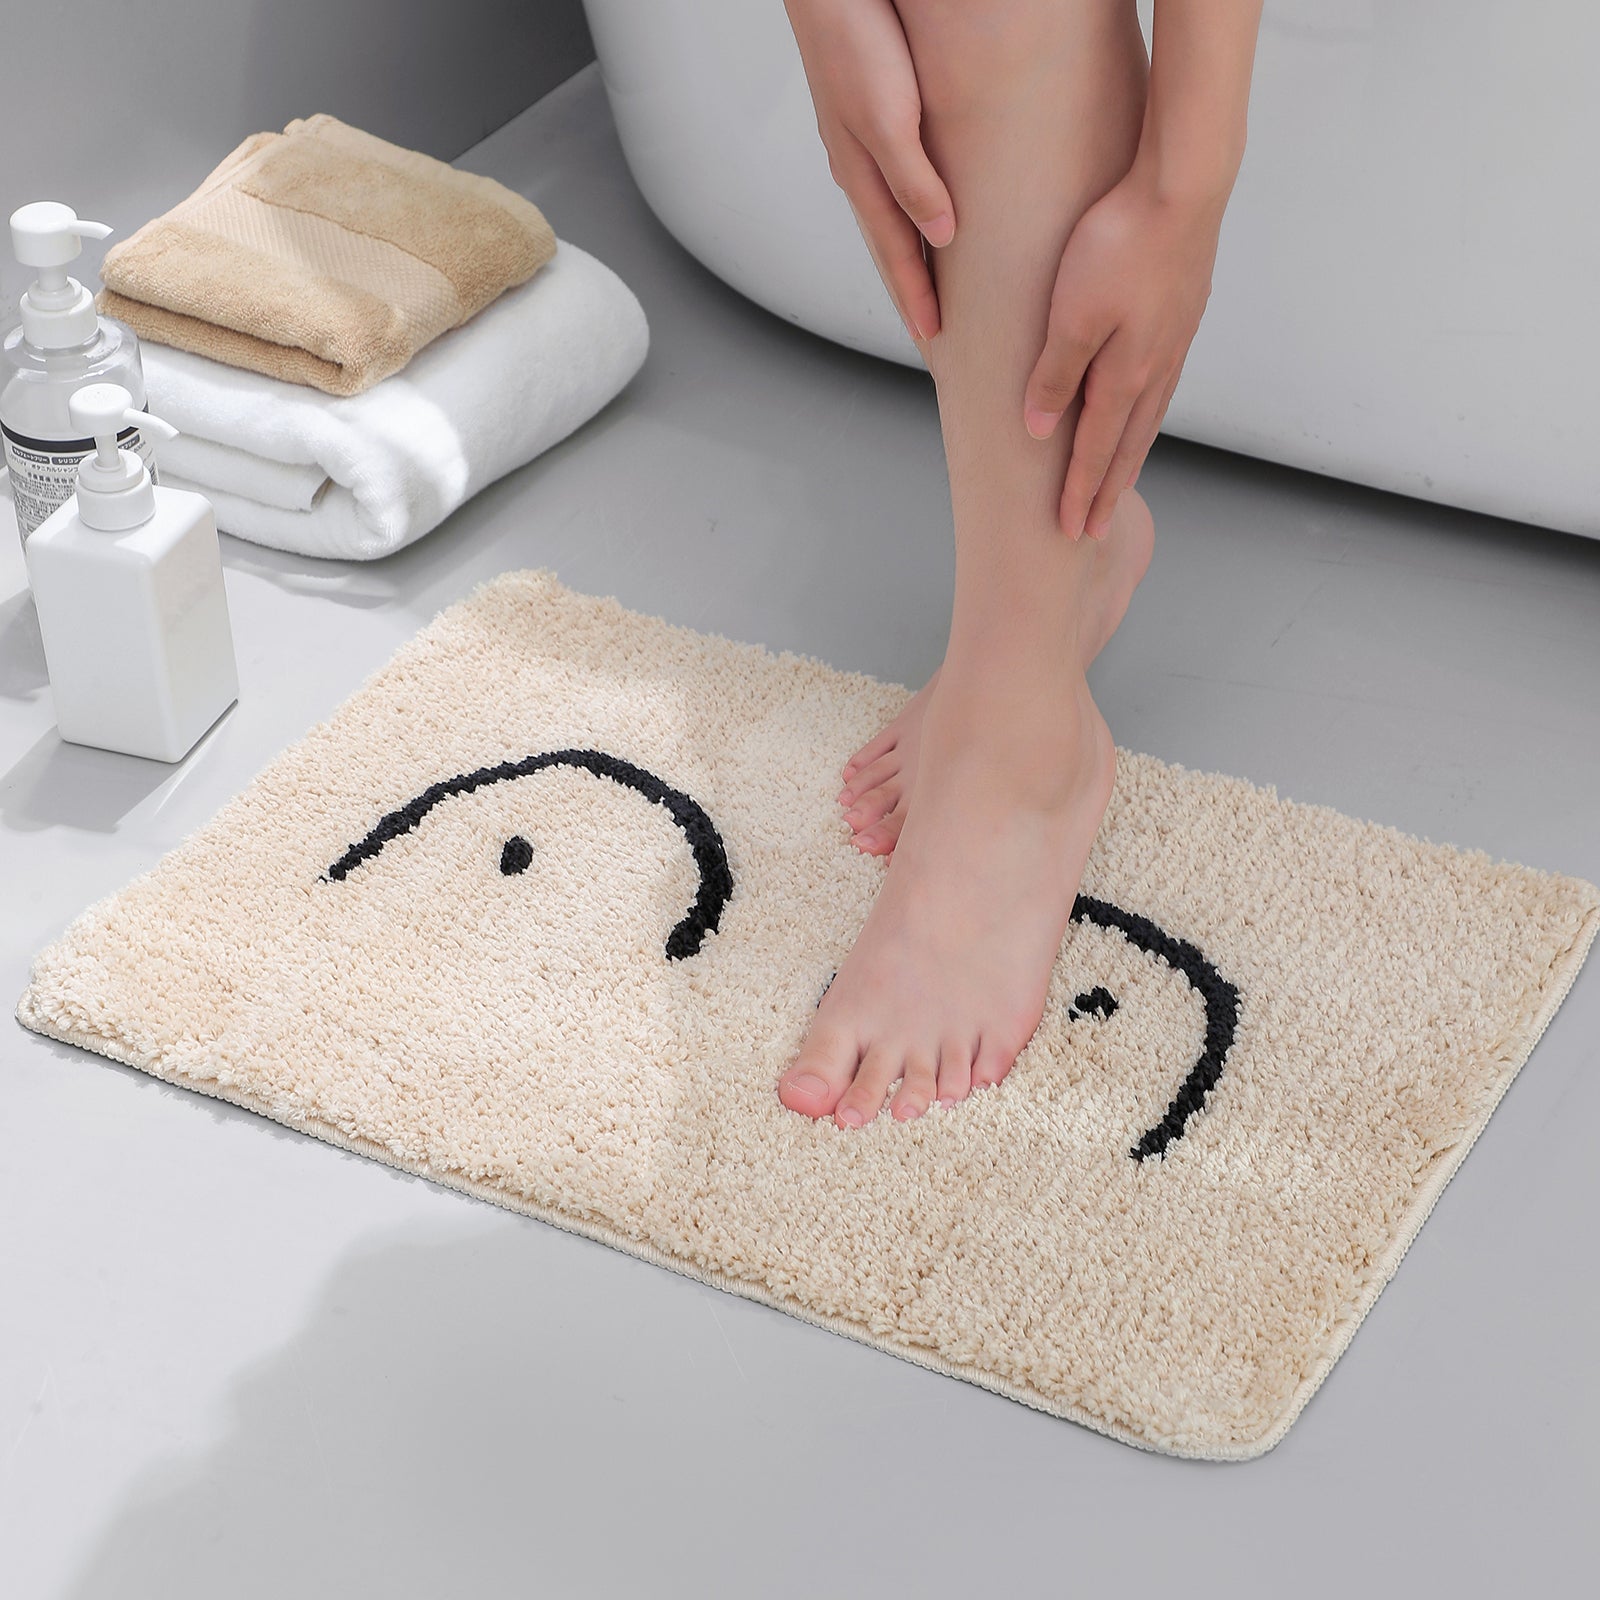 Feblilac Cute Naked Boobs Bath Mat - Feblilac® Mat